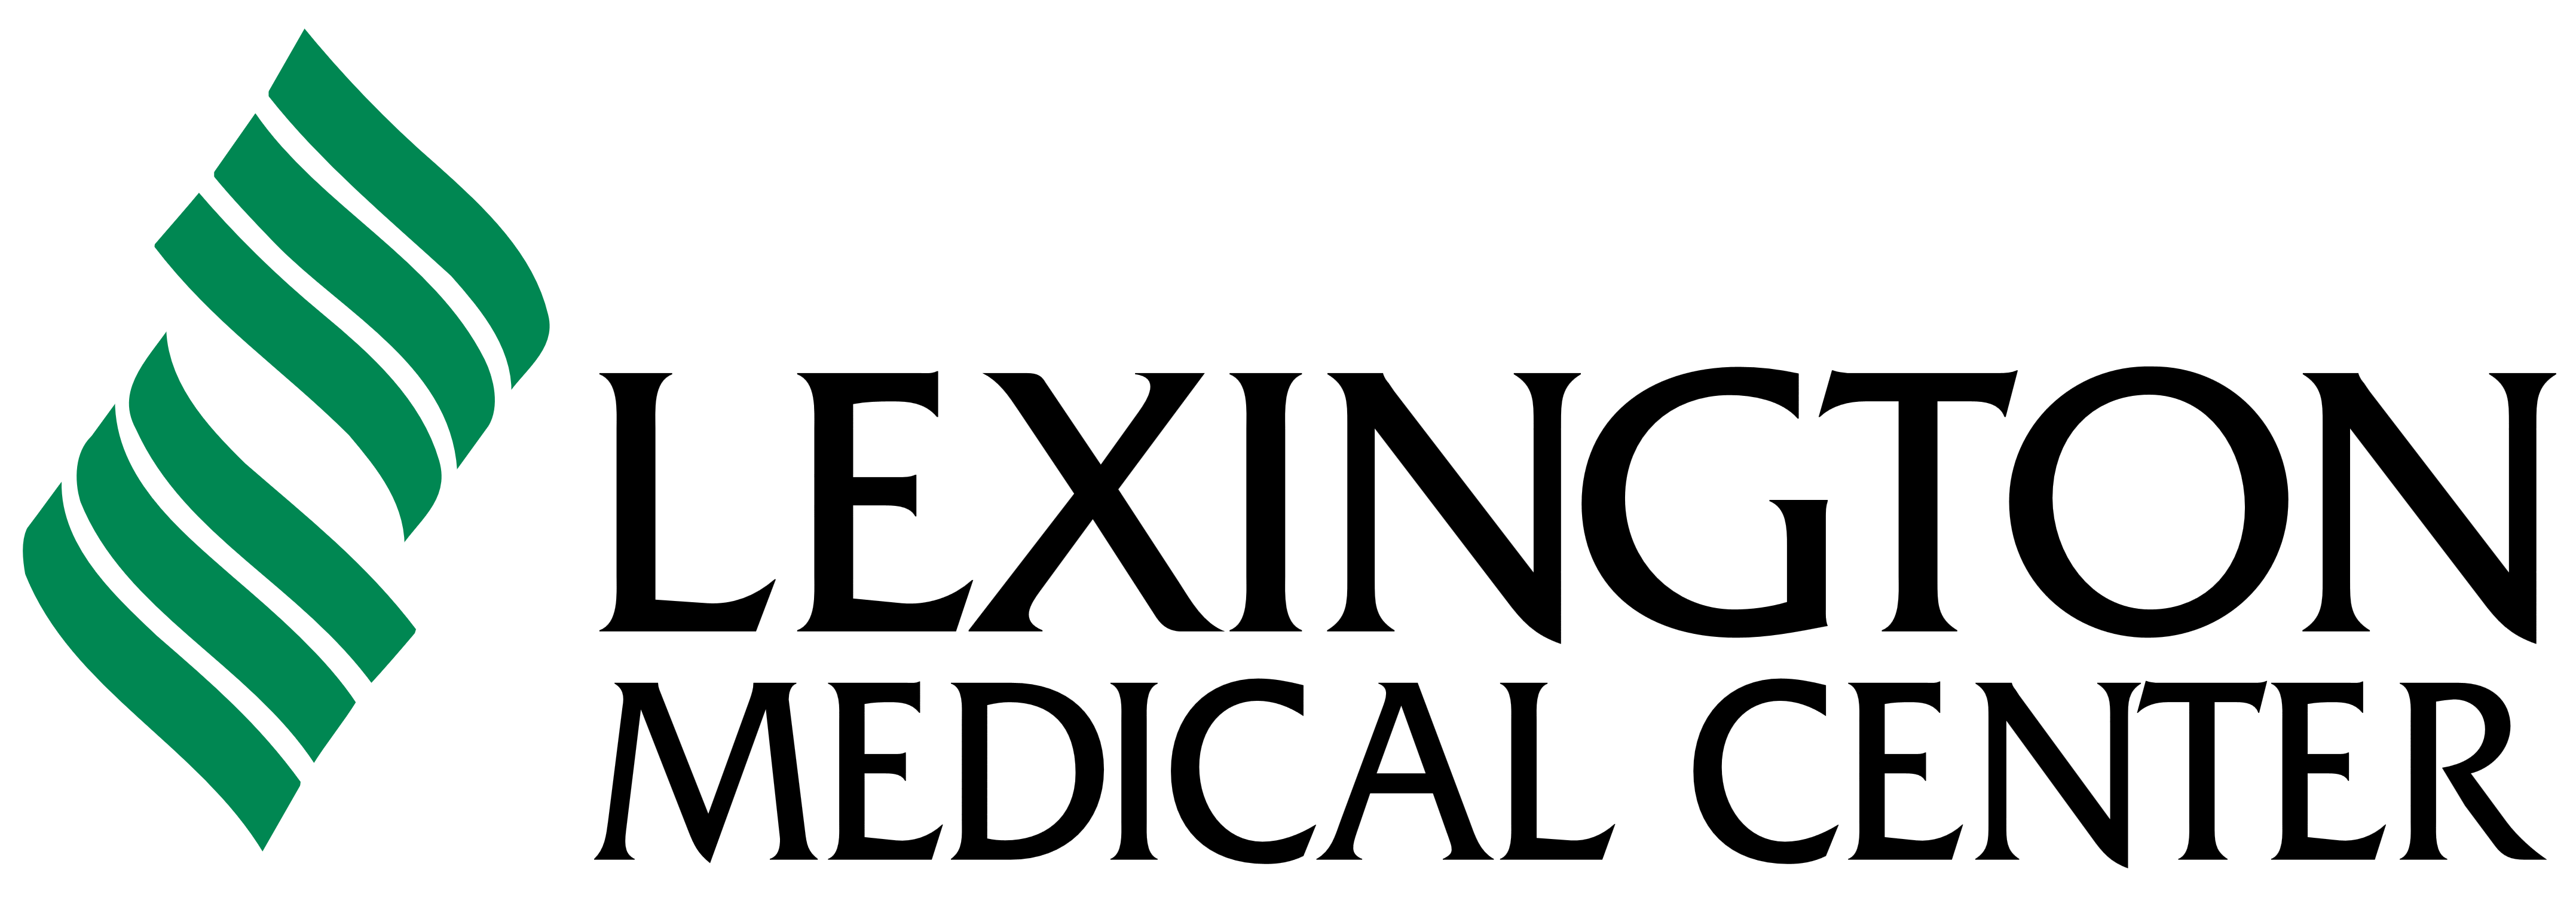 Lexington_Medical_Center_logo